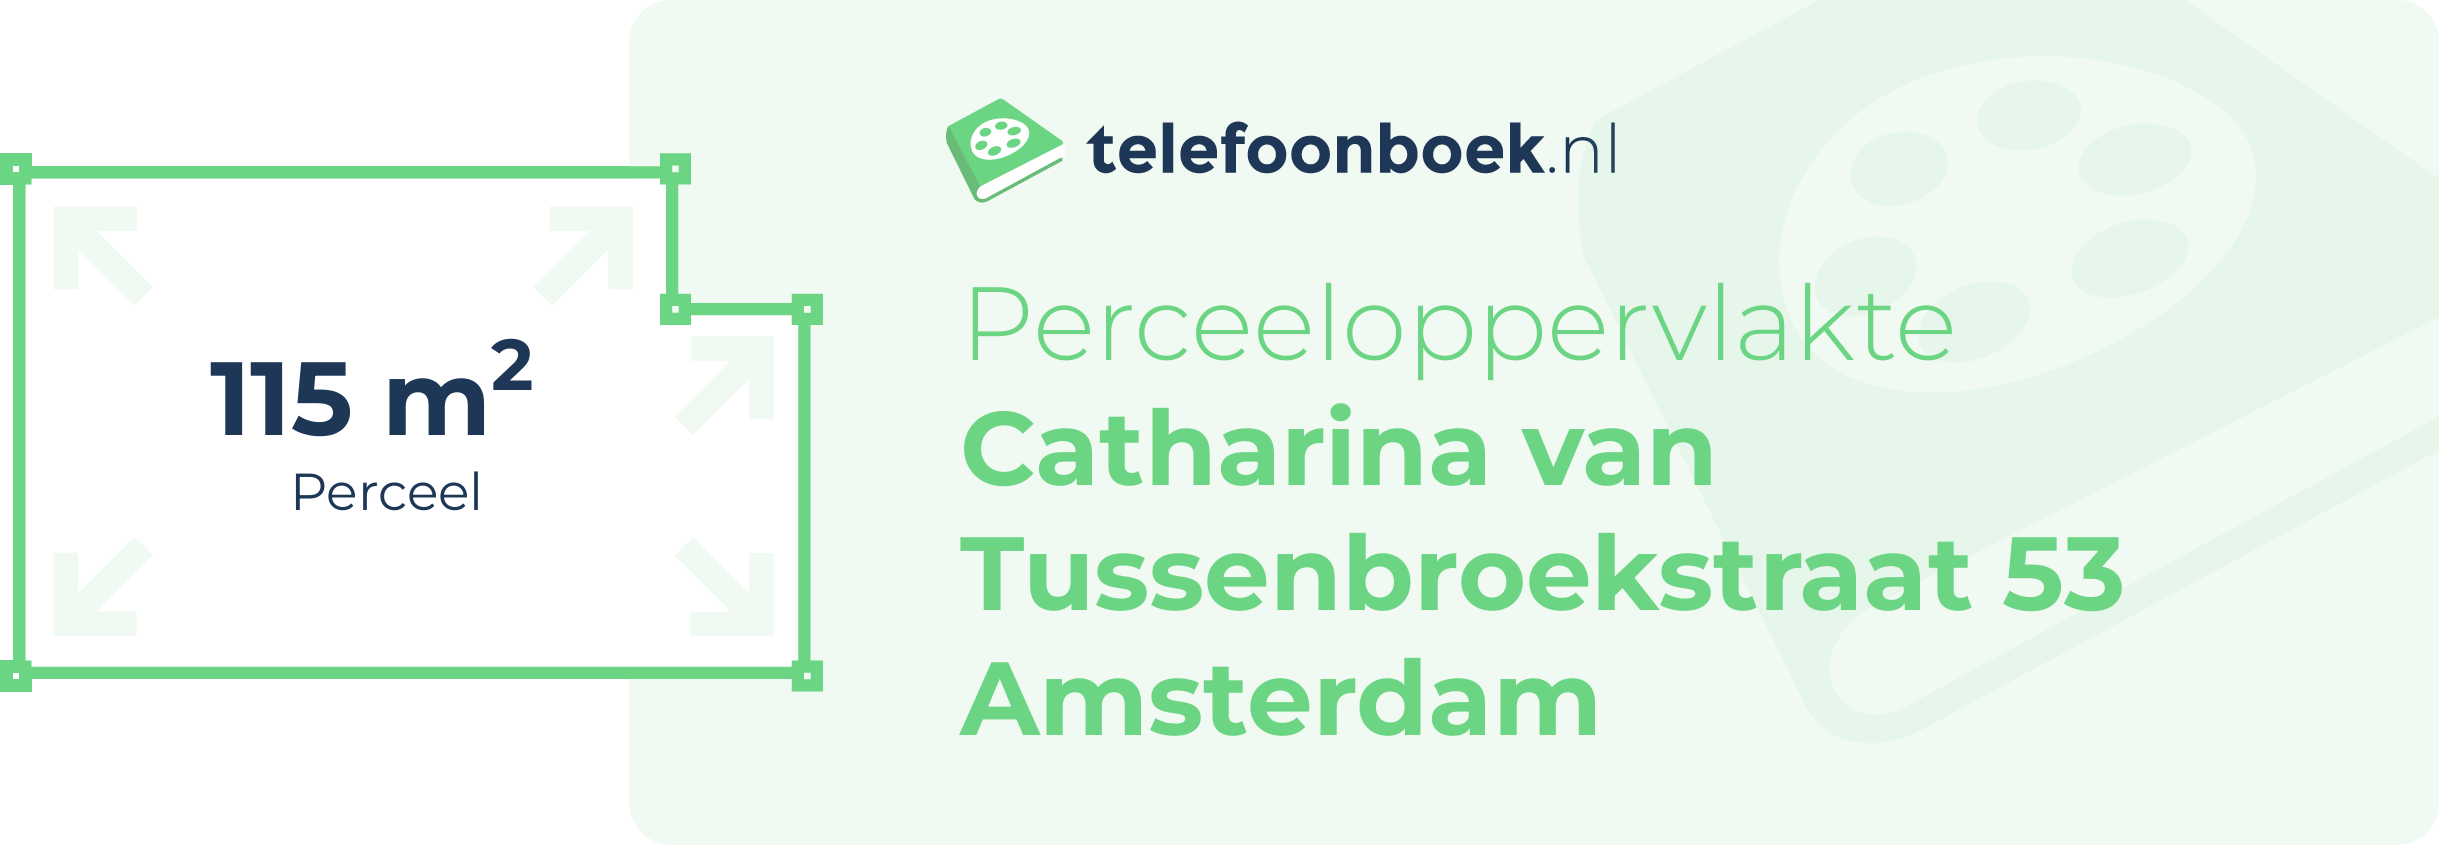 Perceeloppervlakte Catharina Van Tussenbroekstraat 53 Amsterdam